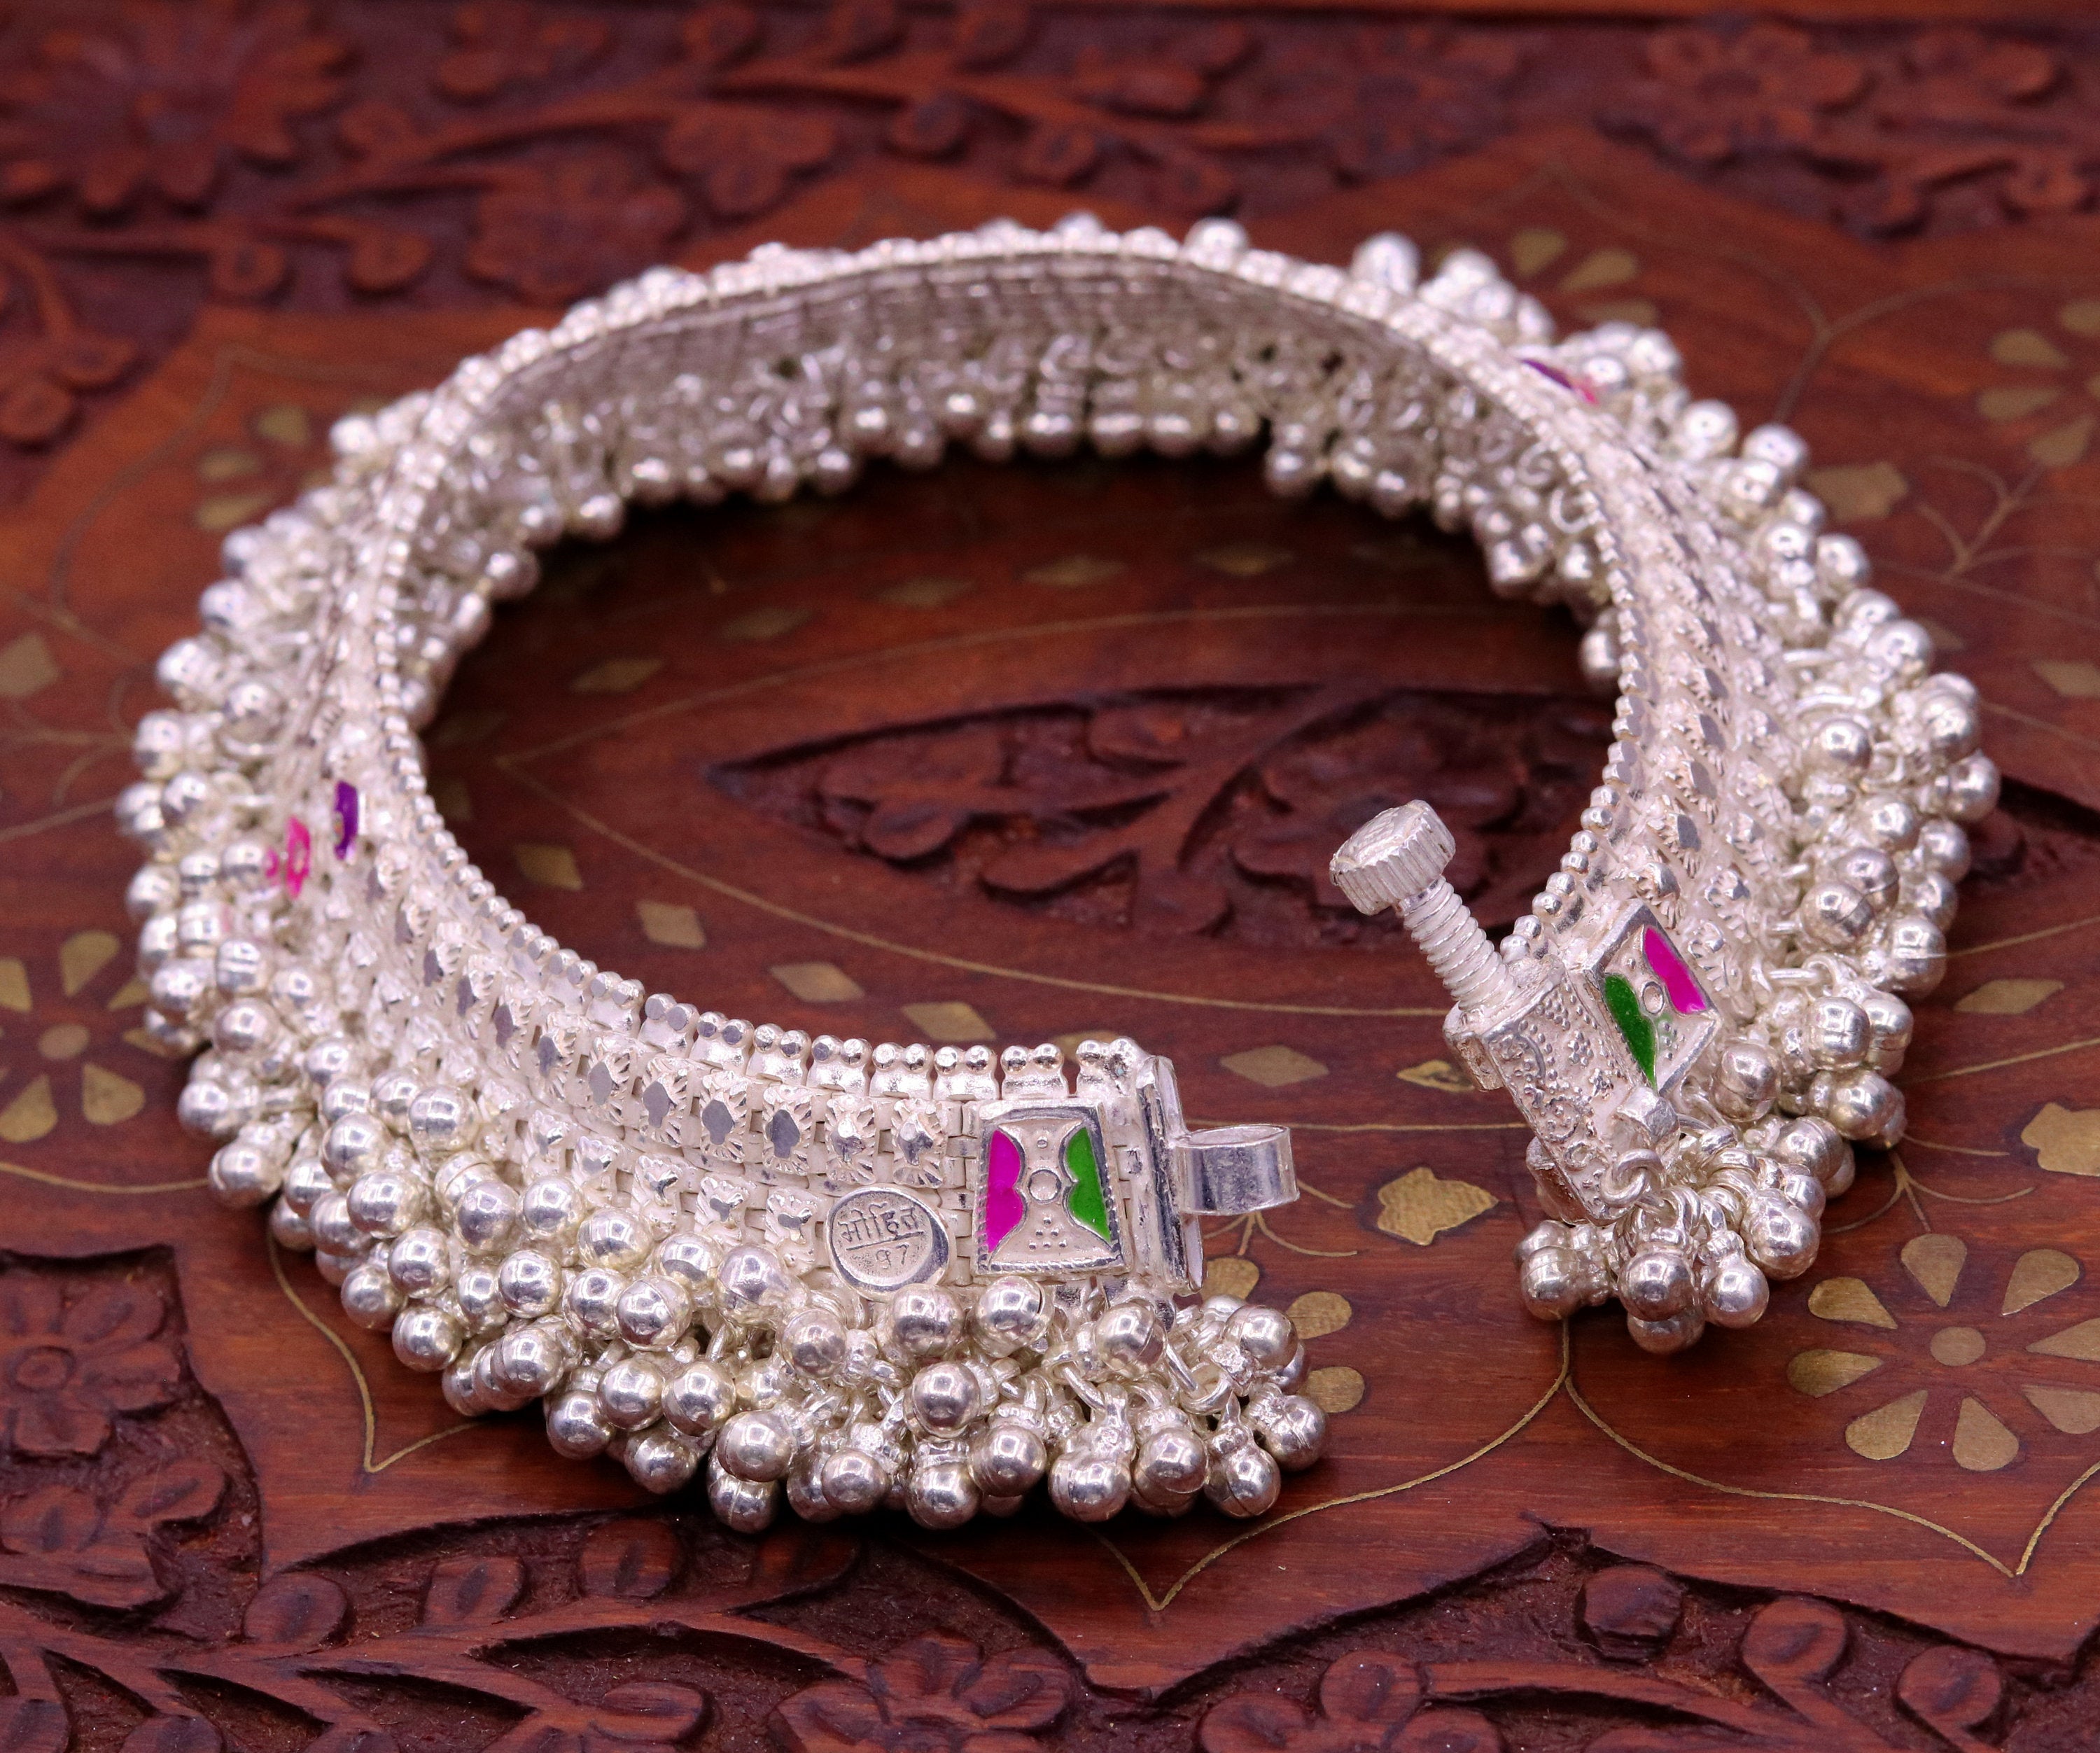 Erode Vasantham silvers Ladies bangles Price 25003000 silver  silverkappu lordmurugan handmade lasermarking men bangle valayal   Instagram